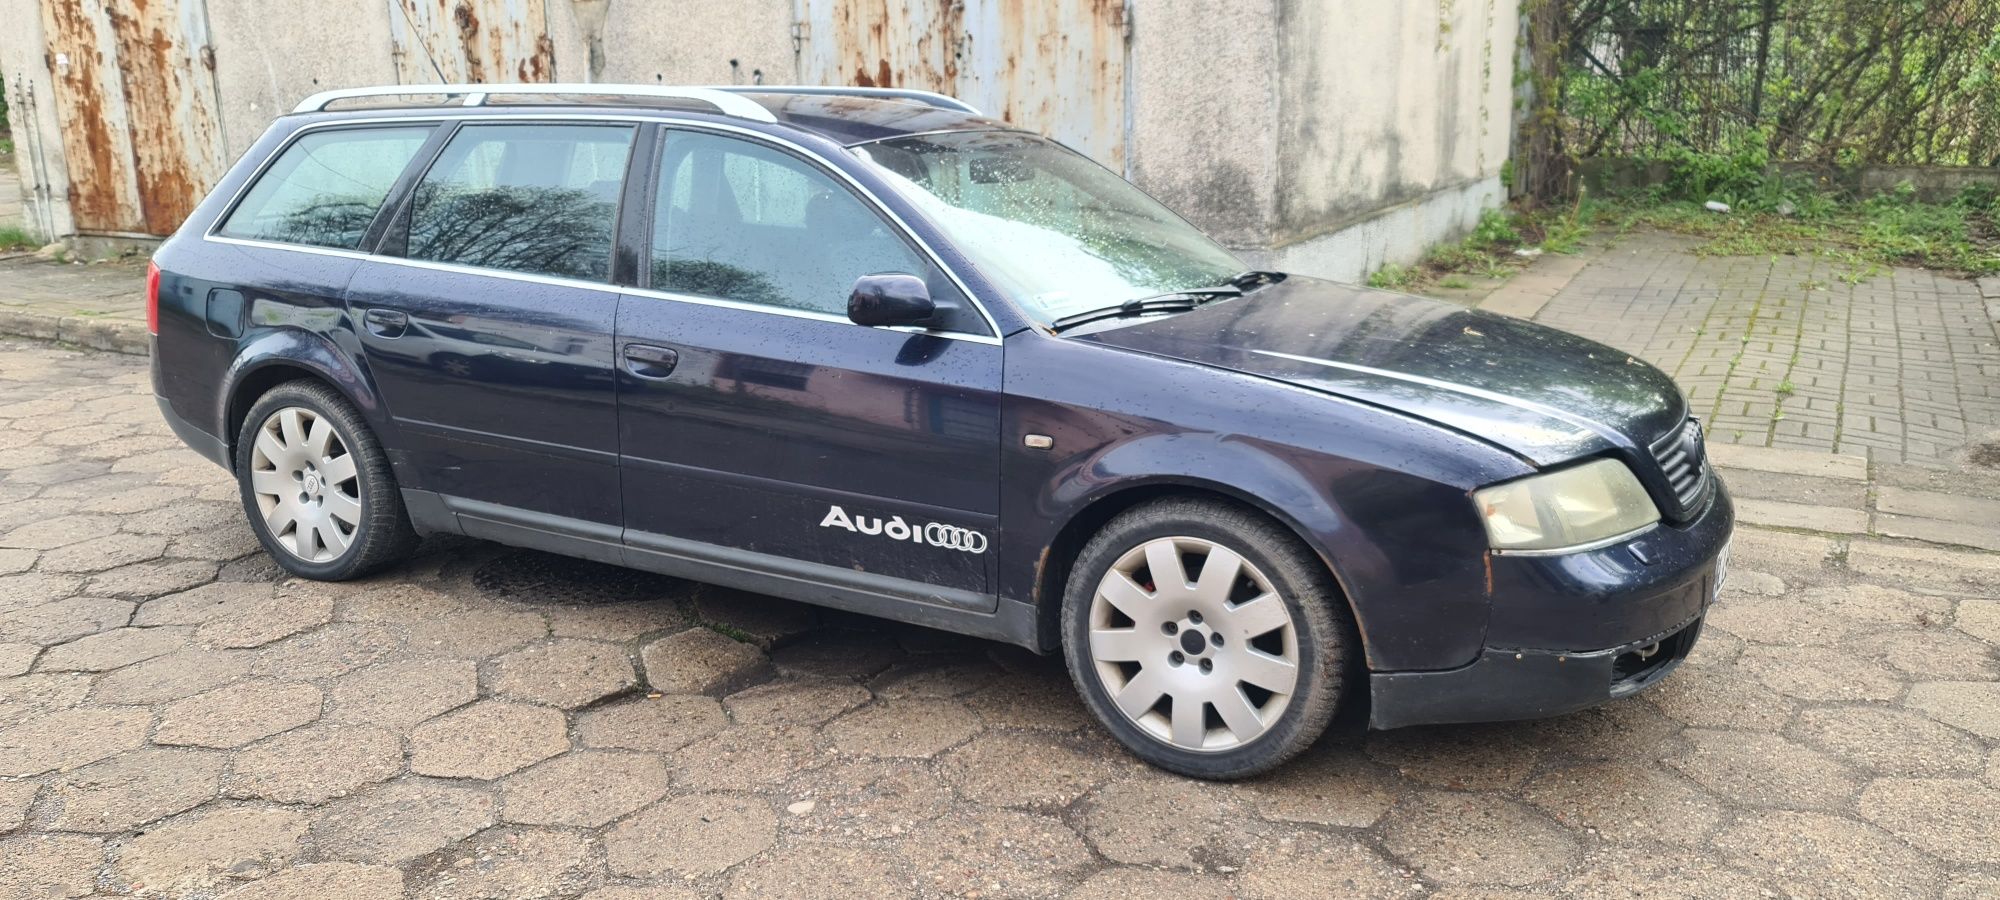 Audi a6 c5 bdv lz5l drzwi maska klapa zderzak lampa